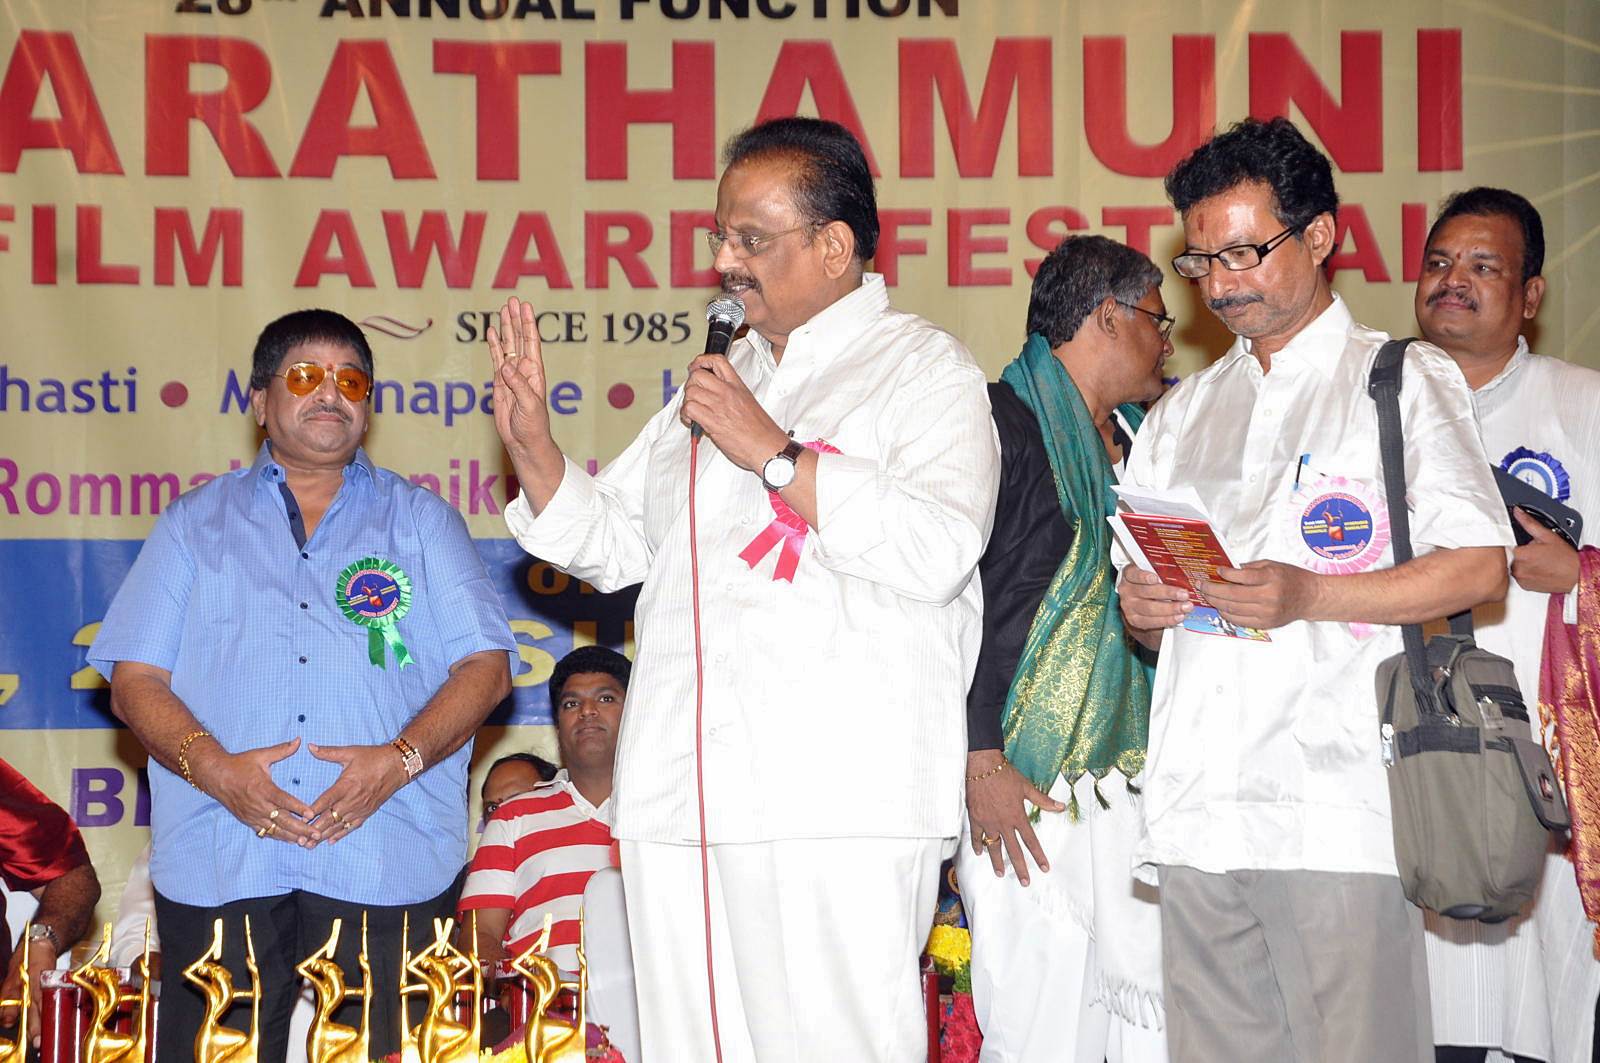 Bharathamuni Awards Function 2013 Photos | Picture 509773